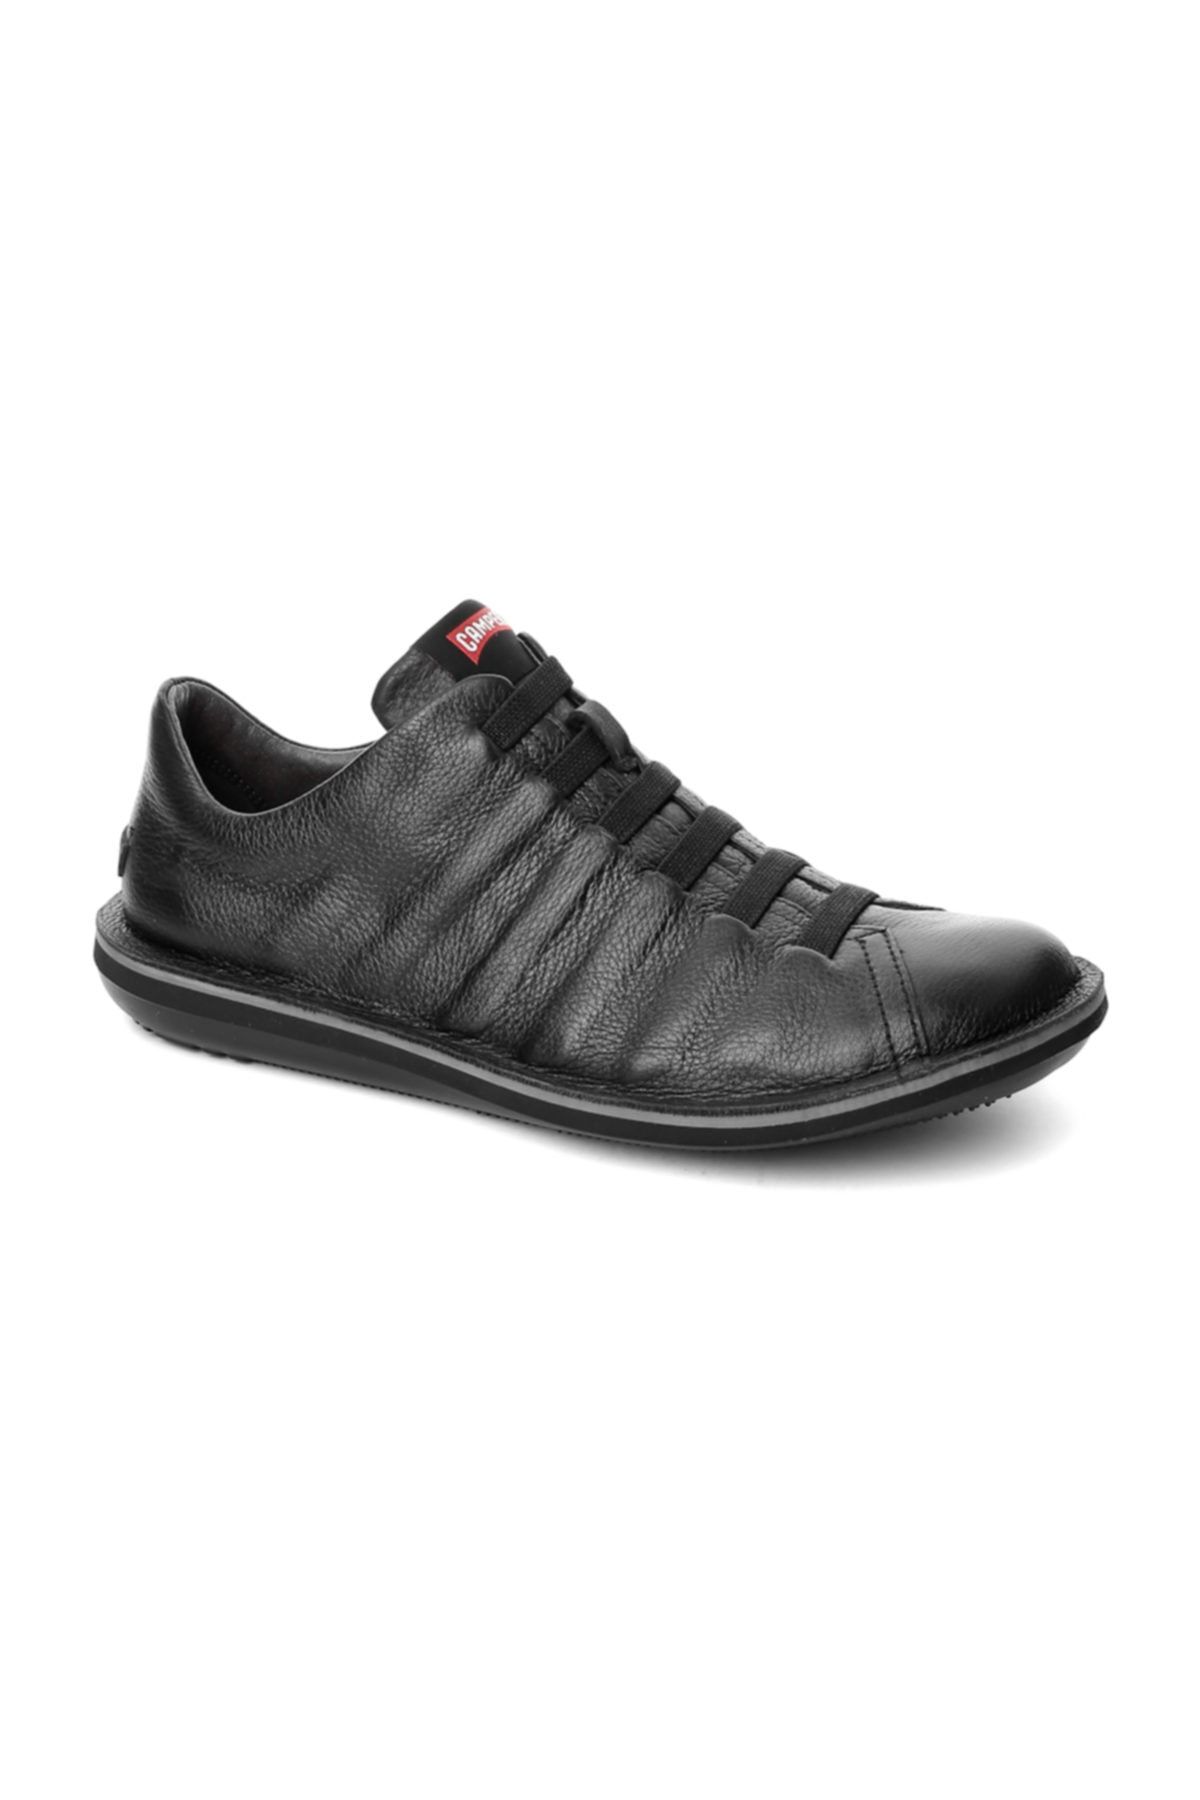 CAMPER Siyah Erkek Sneaker 18751-048 Beetle Black